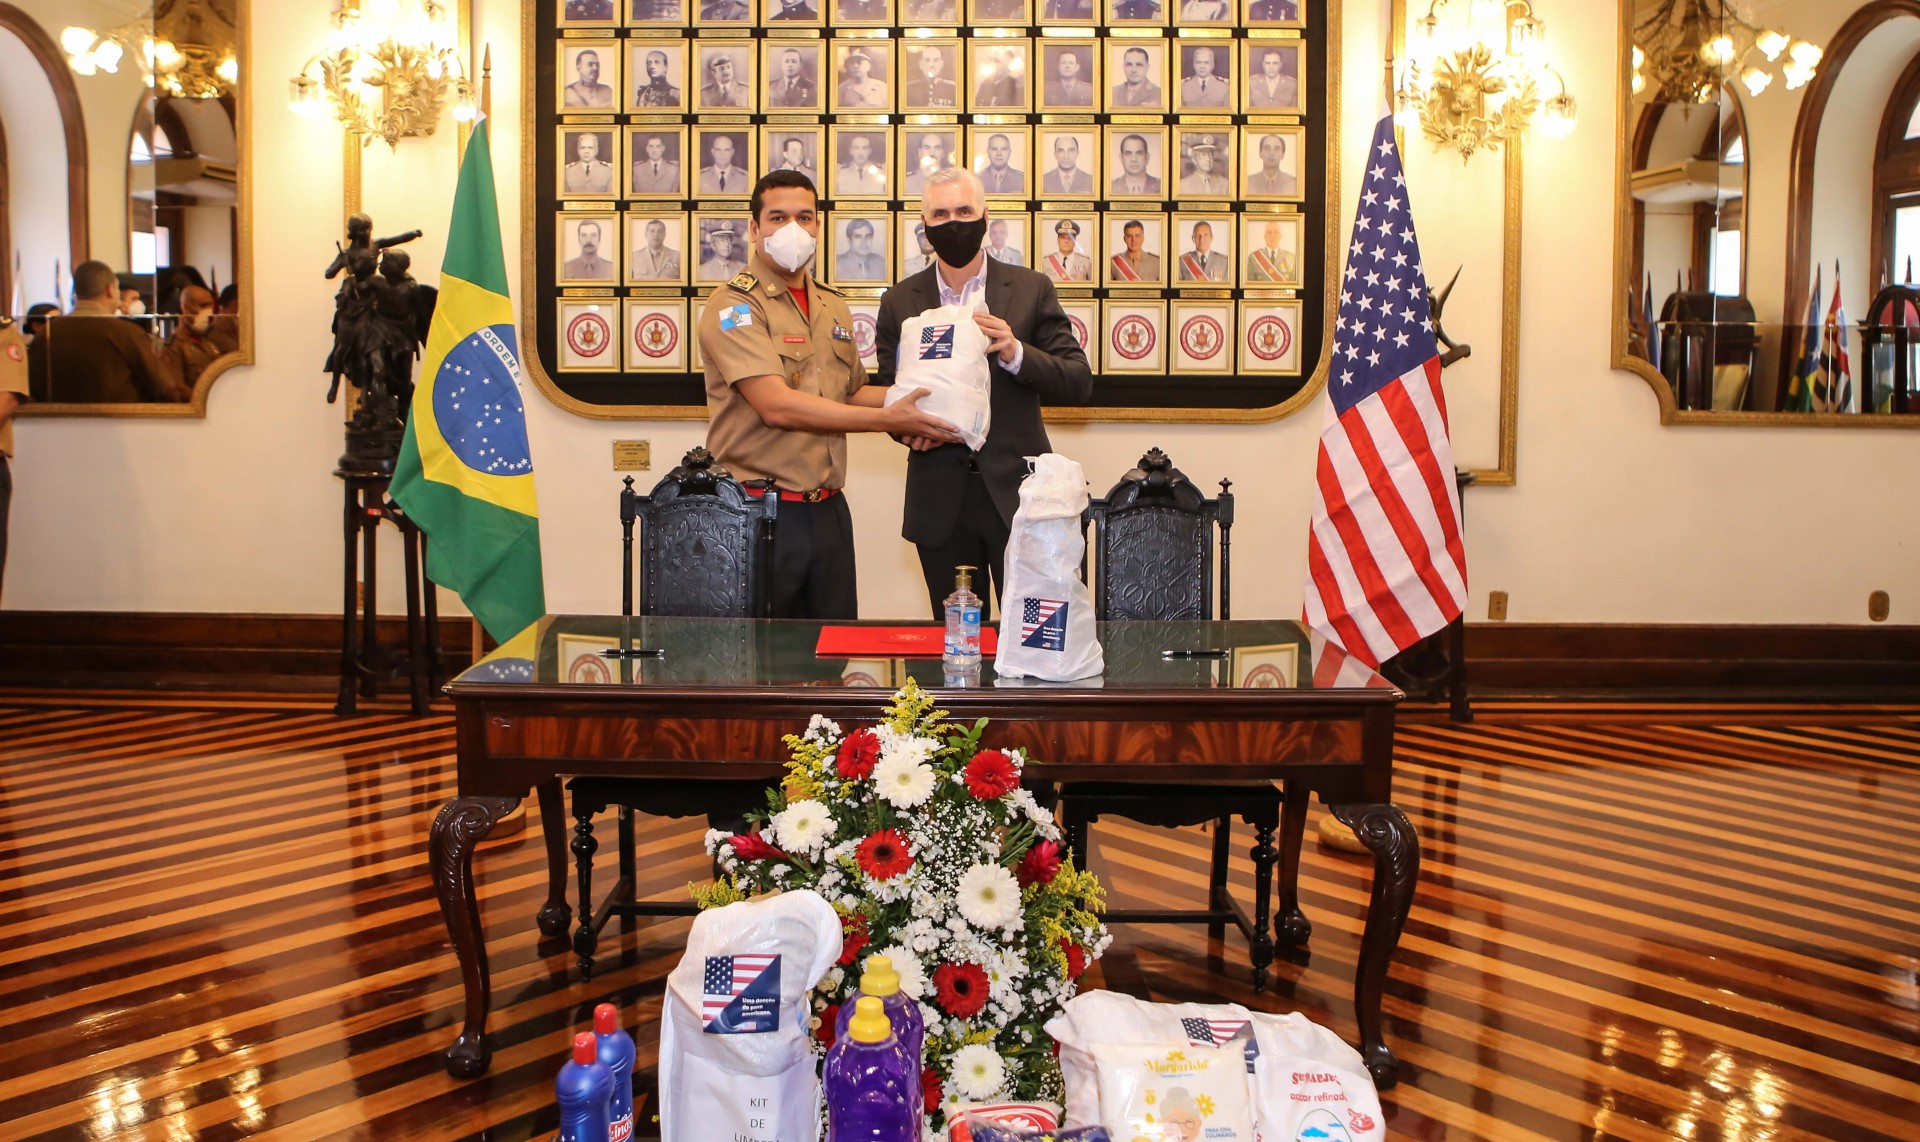 Entrega de EPIs, kits de higiene e cestas básicas pelo Governo dos EUA - Centro e Rocinha - Rogerio Santana